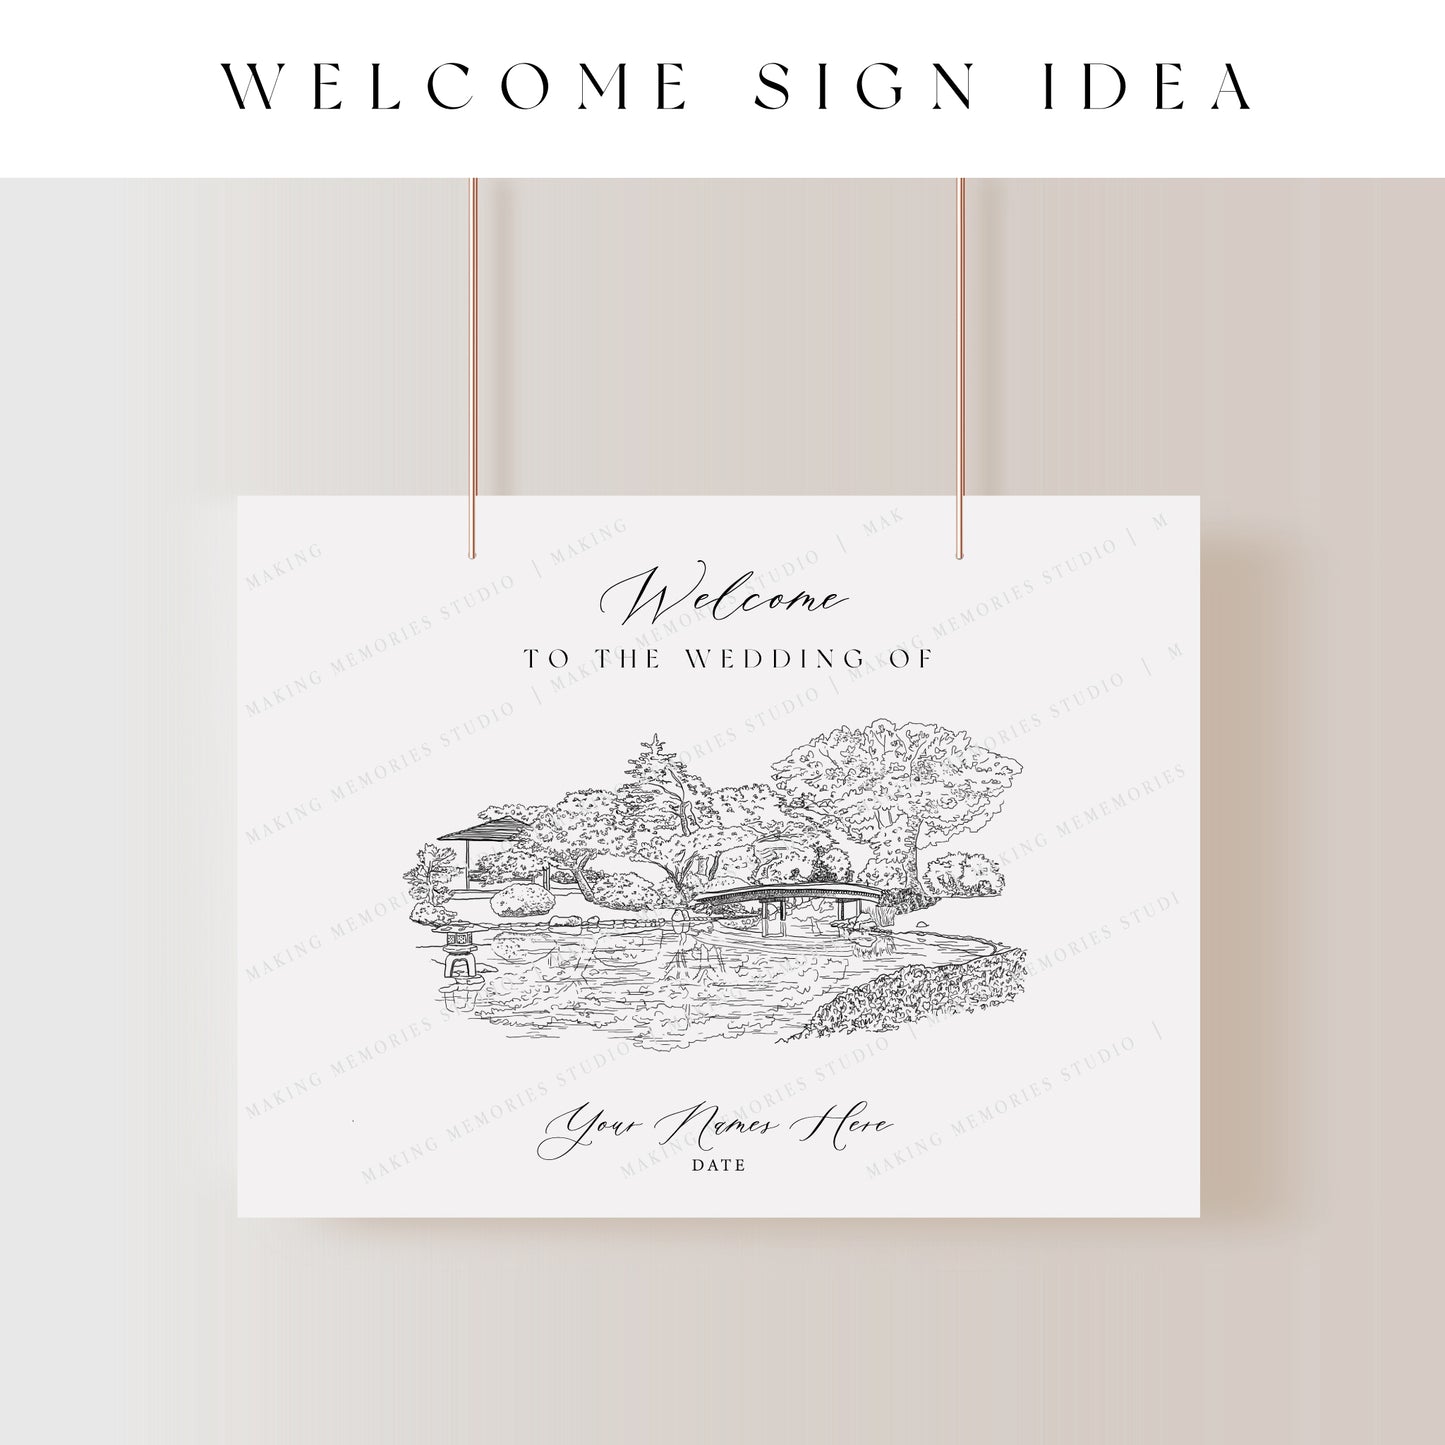 Digital File - Venue Illustration Welcome Sign